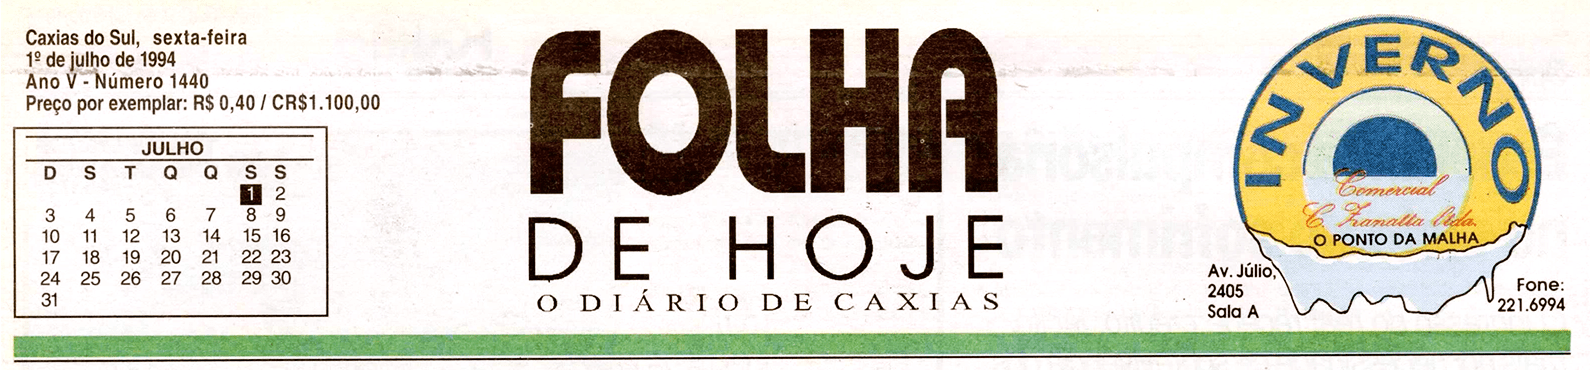 Logotipo da Folha de Hoje, o Diário de Caxias, datado de 1º de julho
de 1994. Texto ao canto: 'Caxias do Sul, sexta-feira. Ano V - Número 1440. Preço
por exemplar: R$ 0,40 / CR$1.100,00'.